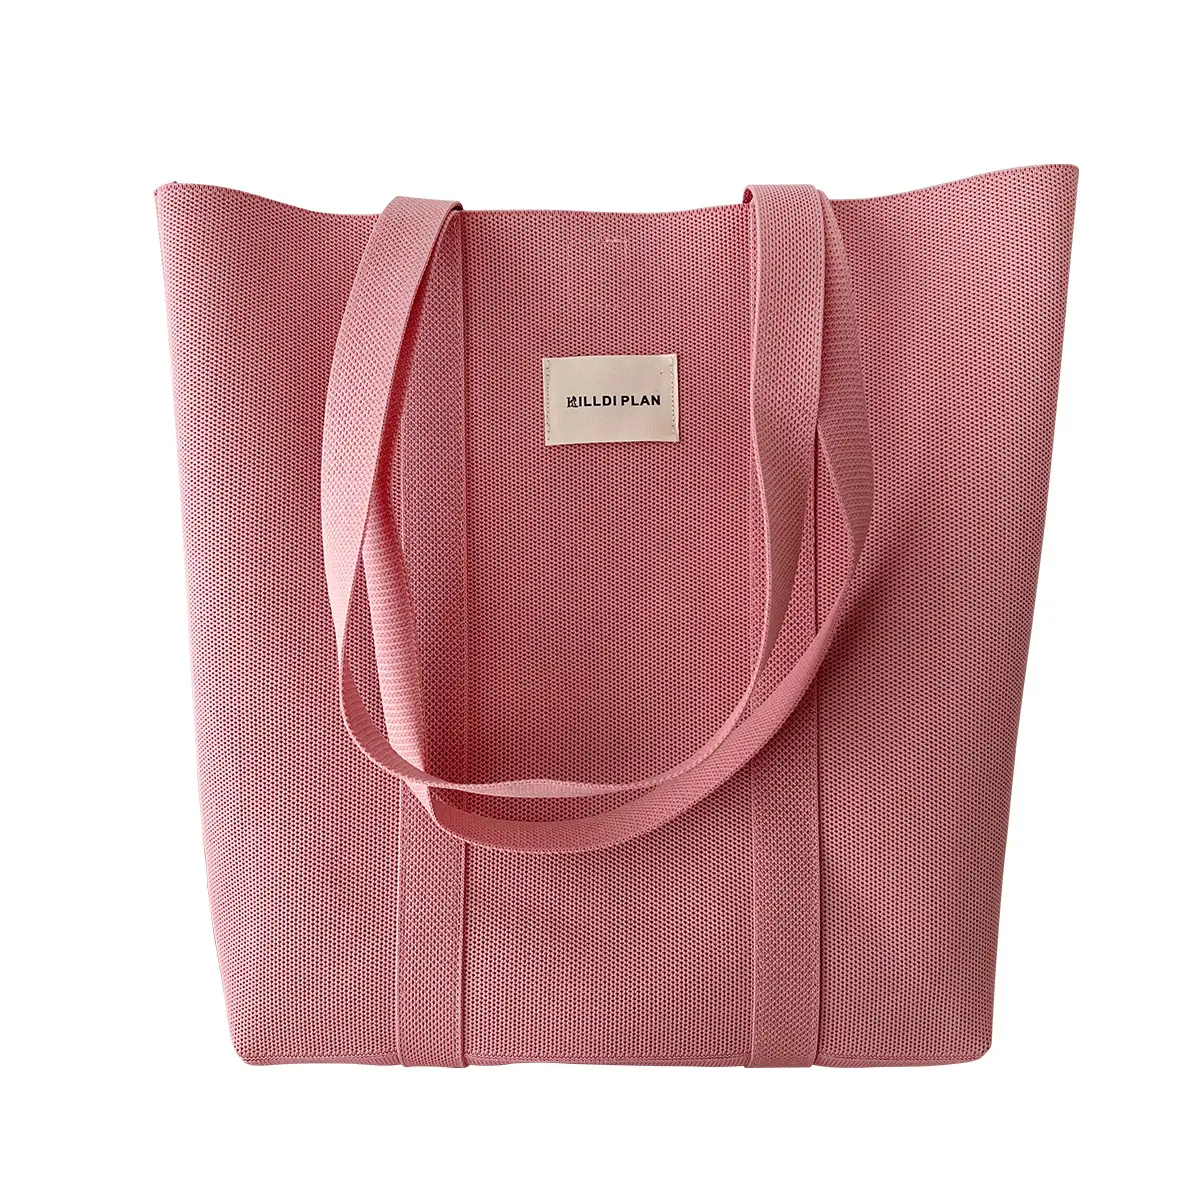 Neue solide Farbe gestrickte Schultertasche einfache vielseitige Handtasche große Kapazität Klasse Pendel-Tote-Tasche